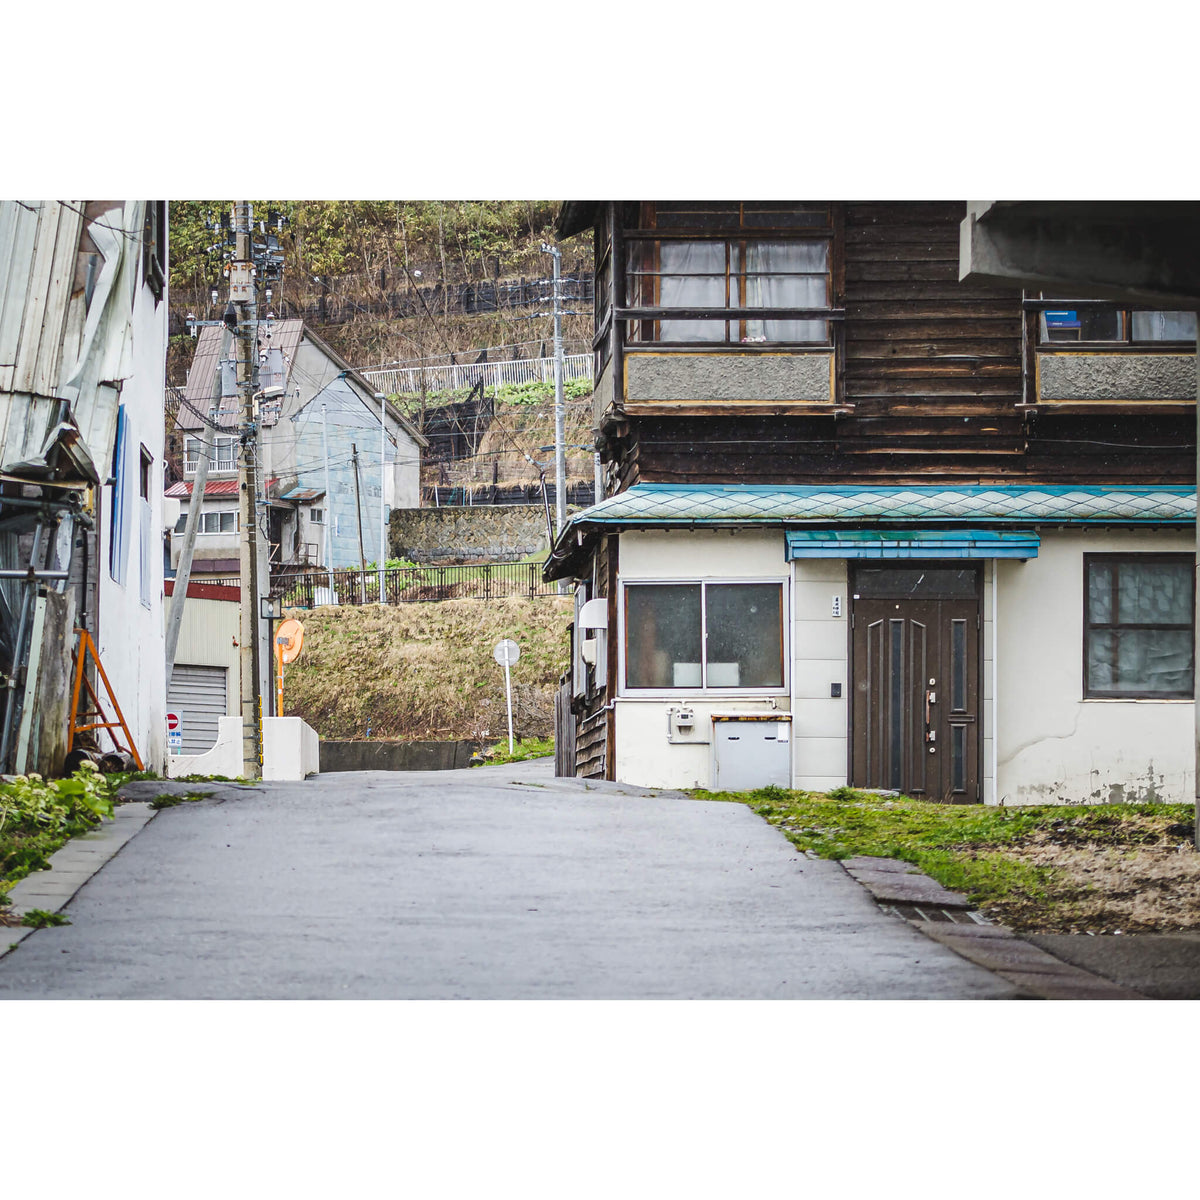 Yubari Backstreet | Streetscapes of Yubari